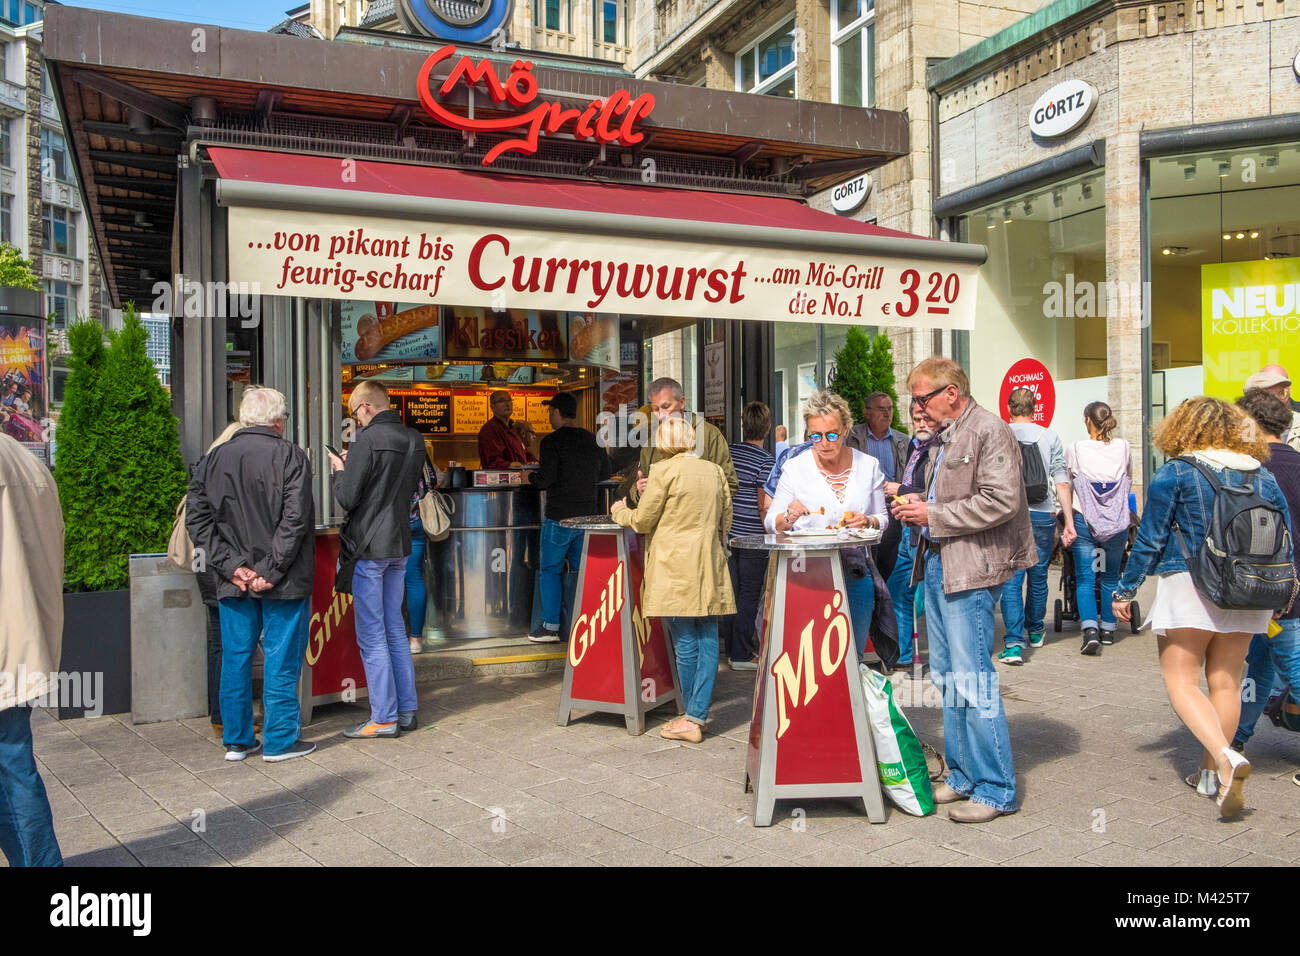 La célèbre Currywurst (Saucisse Allemande) stand dans Mönckebergstrasse, la principale rue commerçante de Hambourg Allemagne Banque D'Images